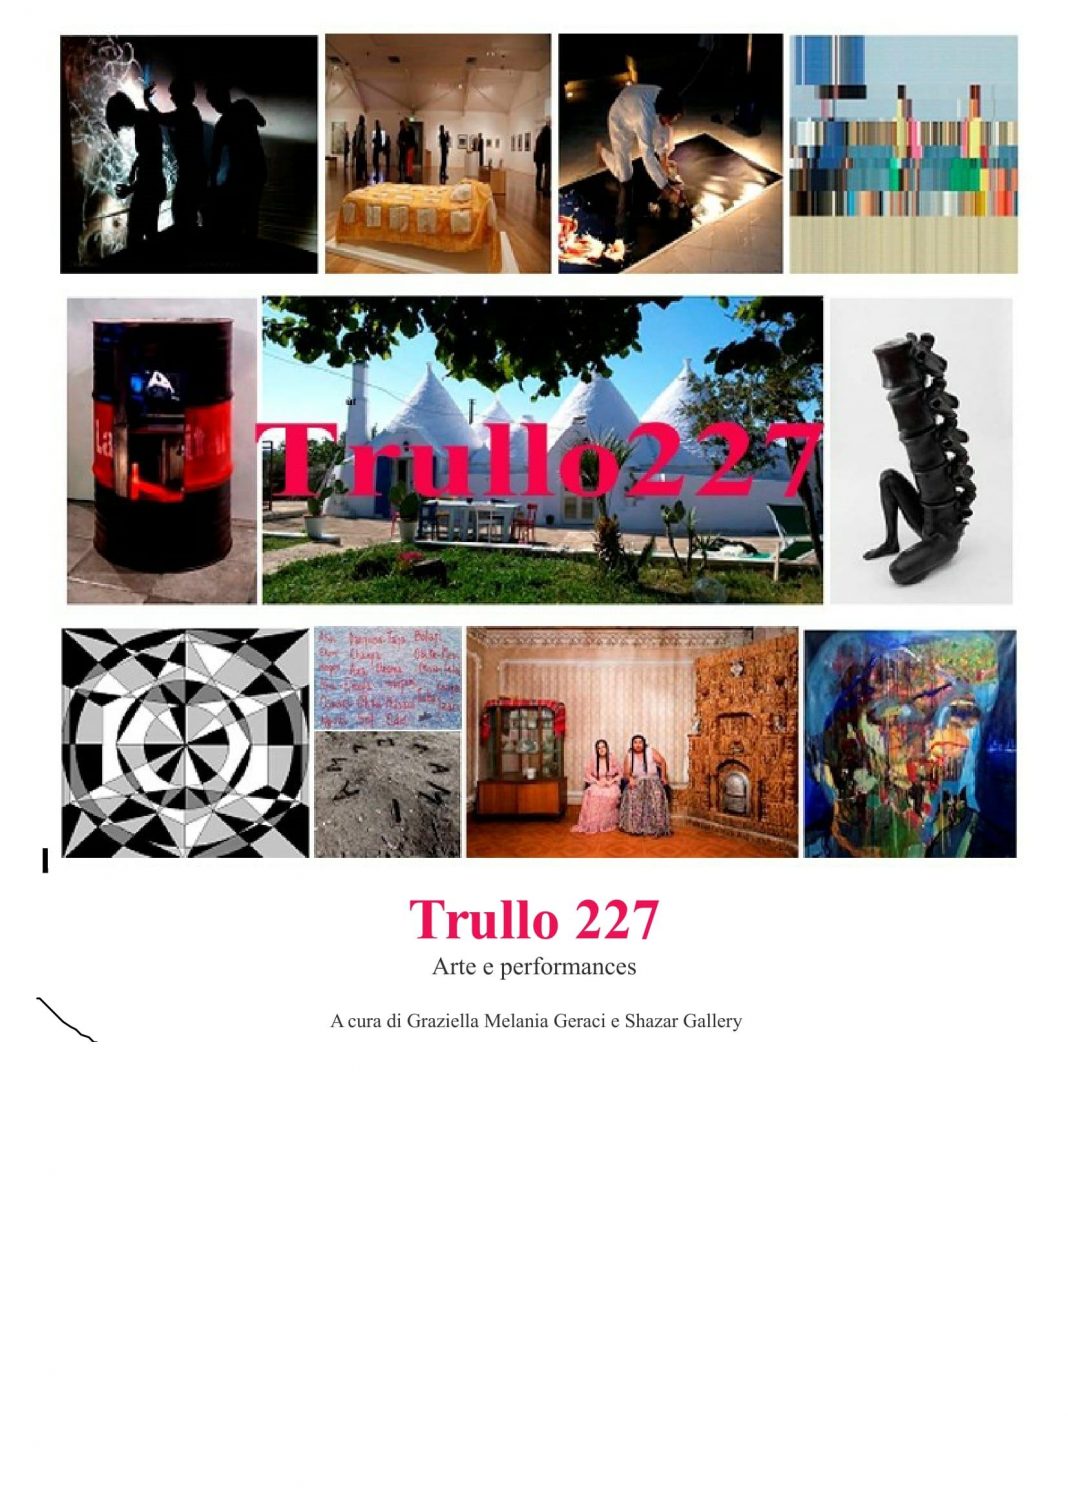 Trullo 227 Arte e Performanceshttps://www.exibart.com/repository/media/eventi/2016/09/trullo-227-arte-e-performances-1068x1511.jpg